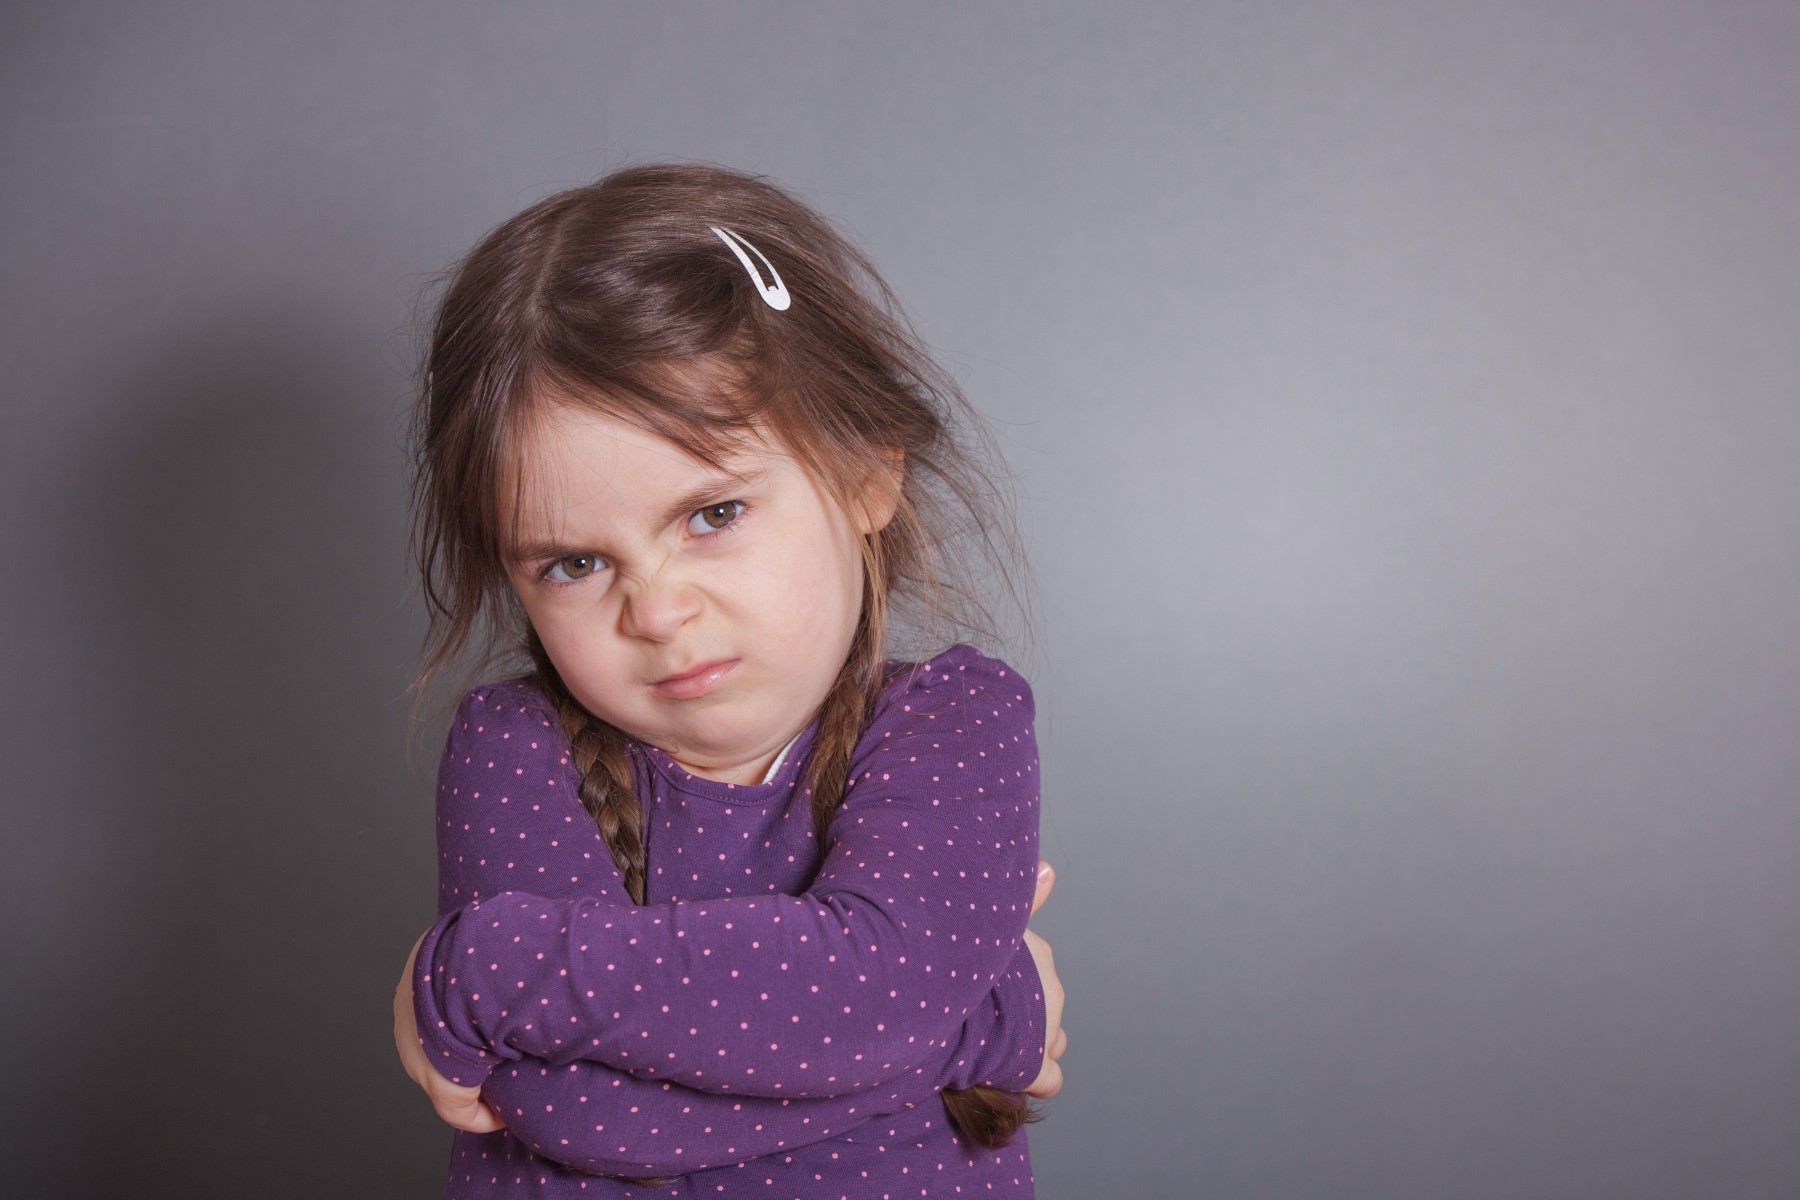 آموزش کنترل خشم به کودکان – بخش سوم